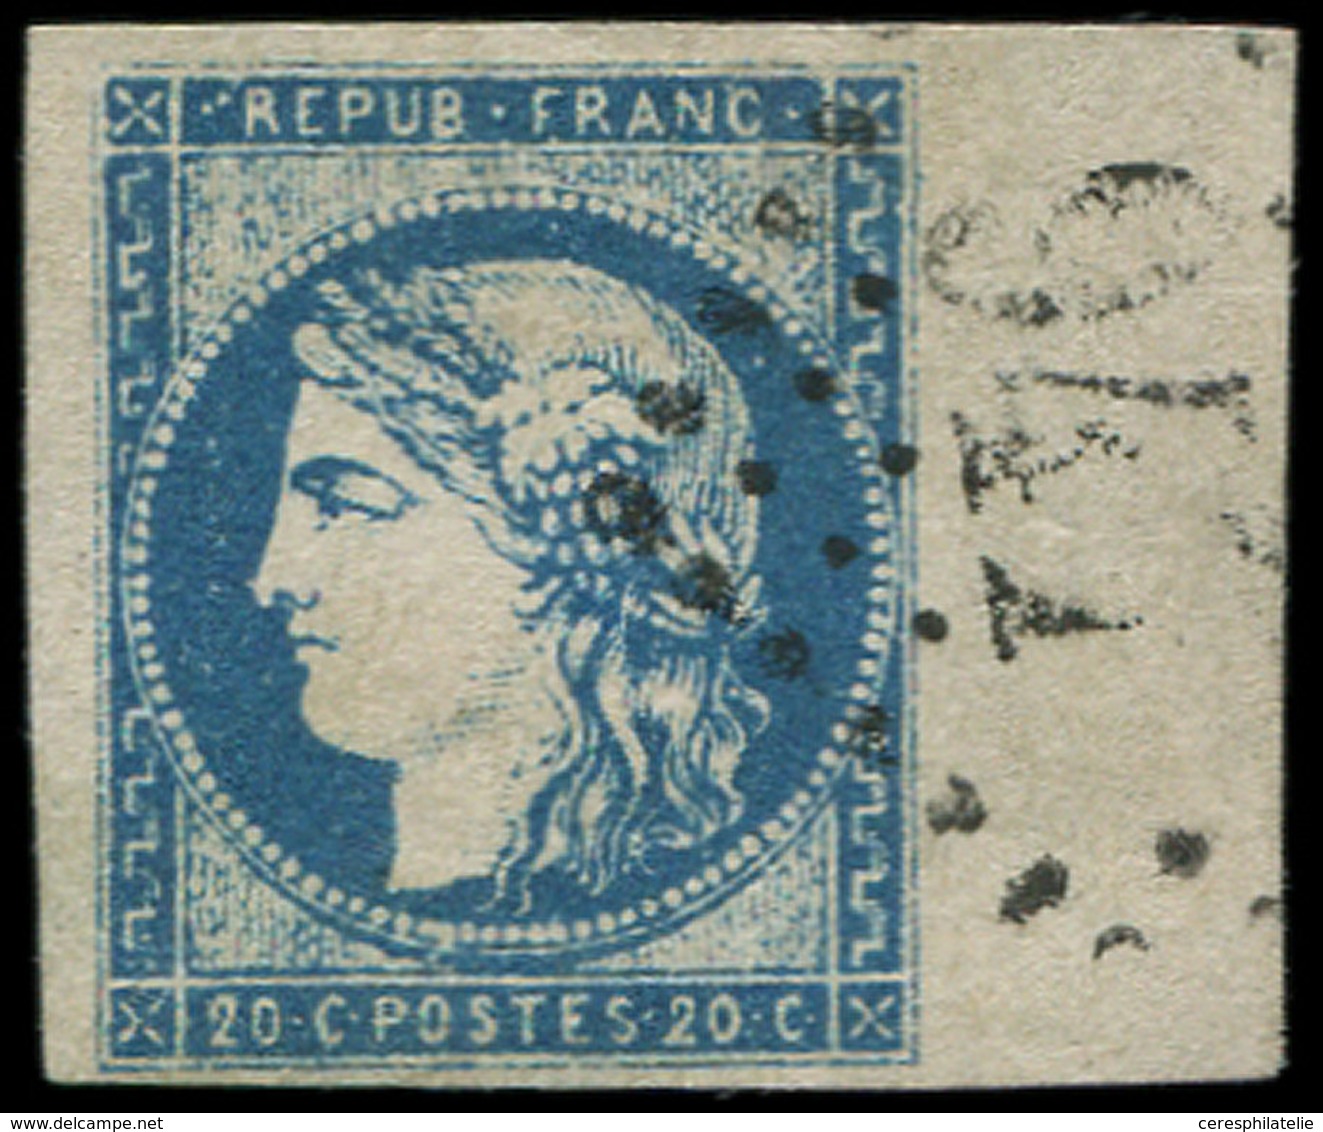 EMISSION DE BORDEAUX - 44Aa 20c. Bleu Foncé, T I, R I, Obl. GC, BORD De FEUILLE, Superbe - 1870 Bordeaux Printing